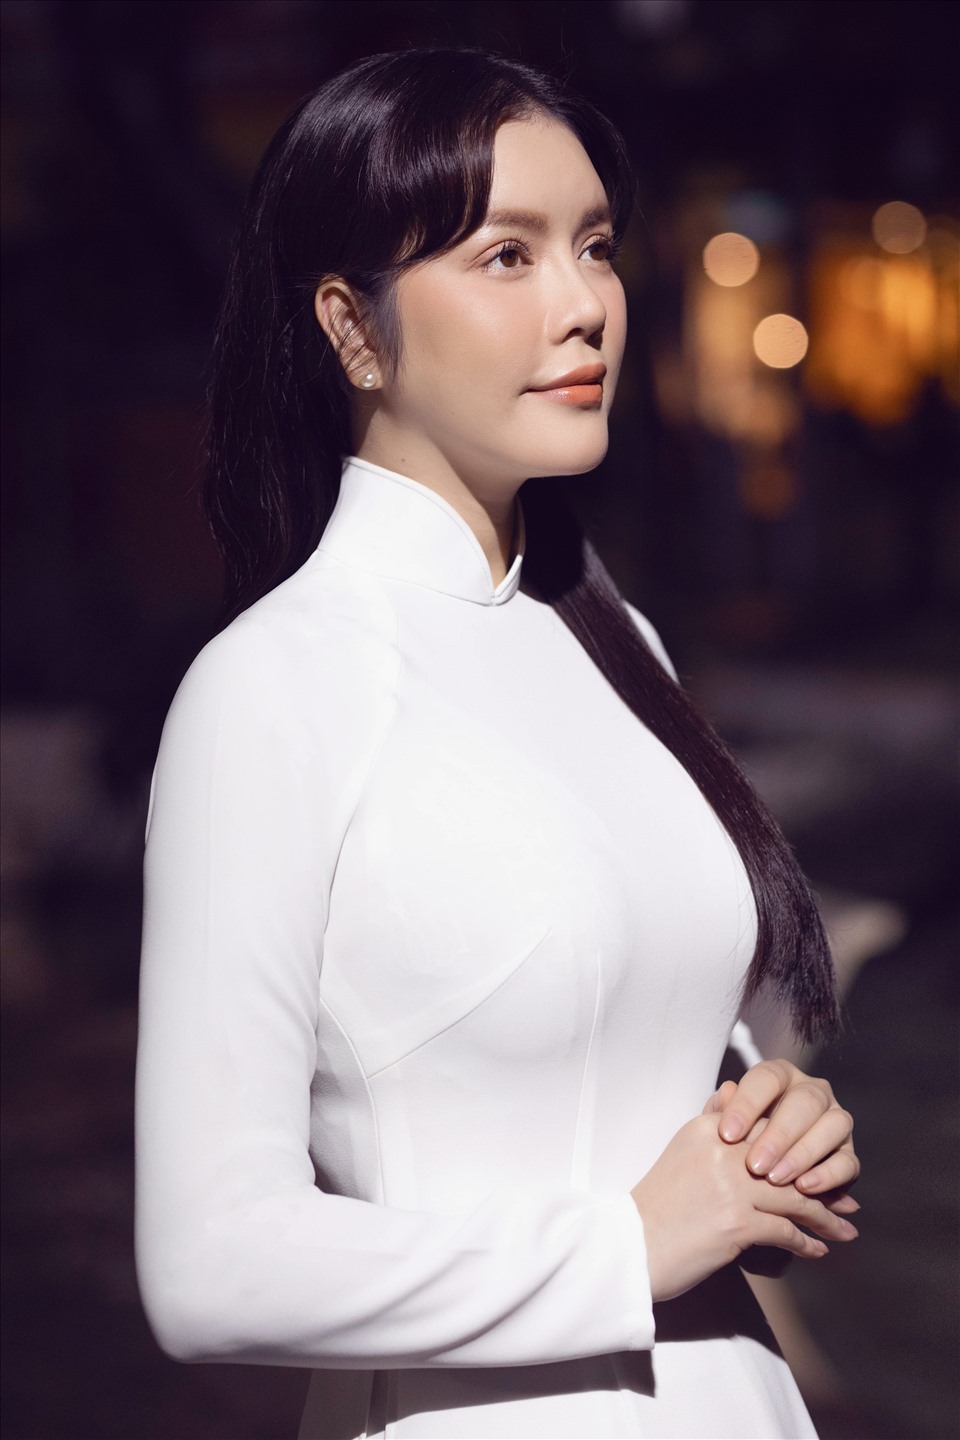 Áo dài trắng tinh khôi luôn là biểu tượng cho vẻ đẹp truyền thống của người Việt Nam. Nếu bạn yêu thích kiểu áo dài này thì chắc hẳn bạn sẽ không muốn bỏ lỡ hình ảnh tuyệt đẹp về áo dài trắng tinh khôi. Hãy cùng khám phá sự tinh tế và thanh lịch trong kiểu áo này!